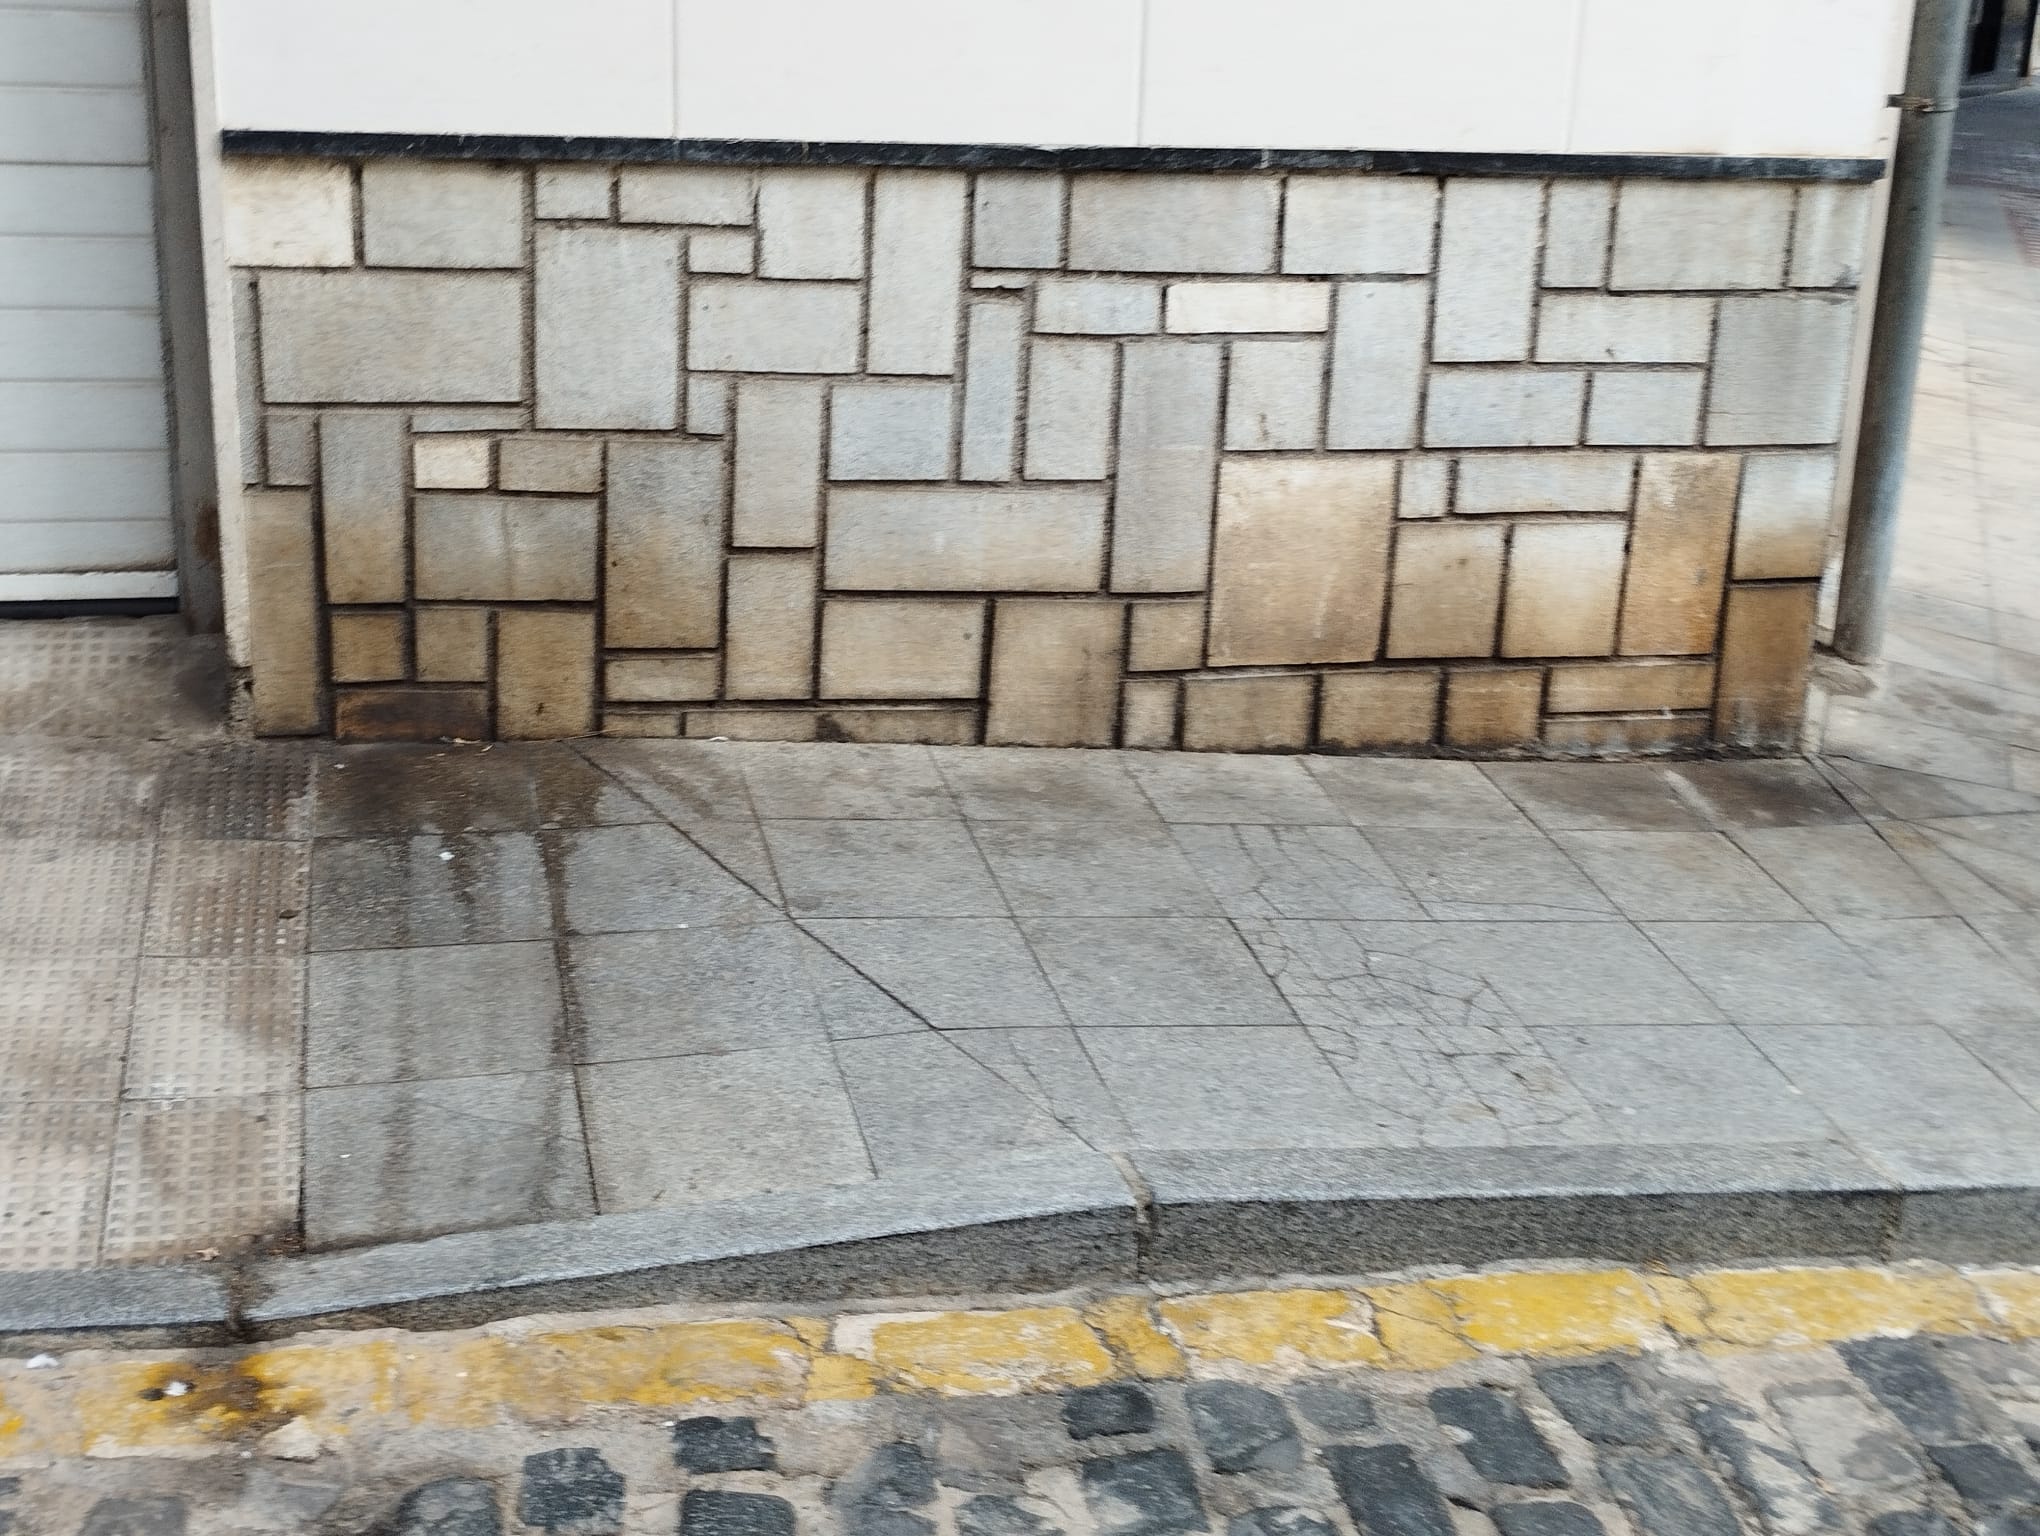 El PSOE advierte del abandono de la calle Cardenal Belluga, en pleno centro, donde se acumula suciedad y es necesario un buen baldeo